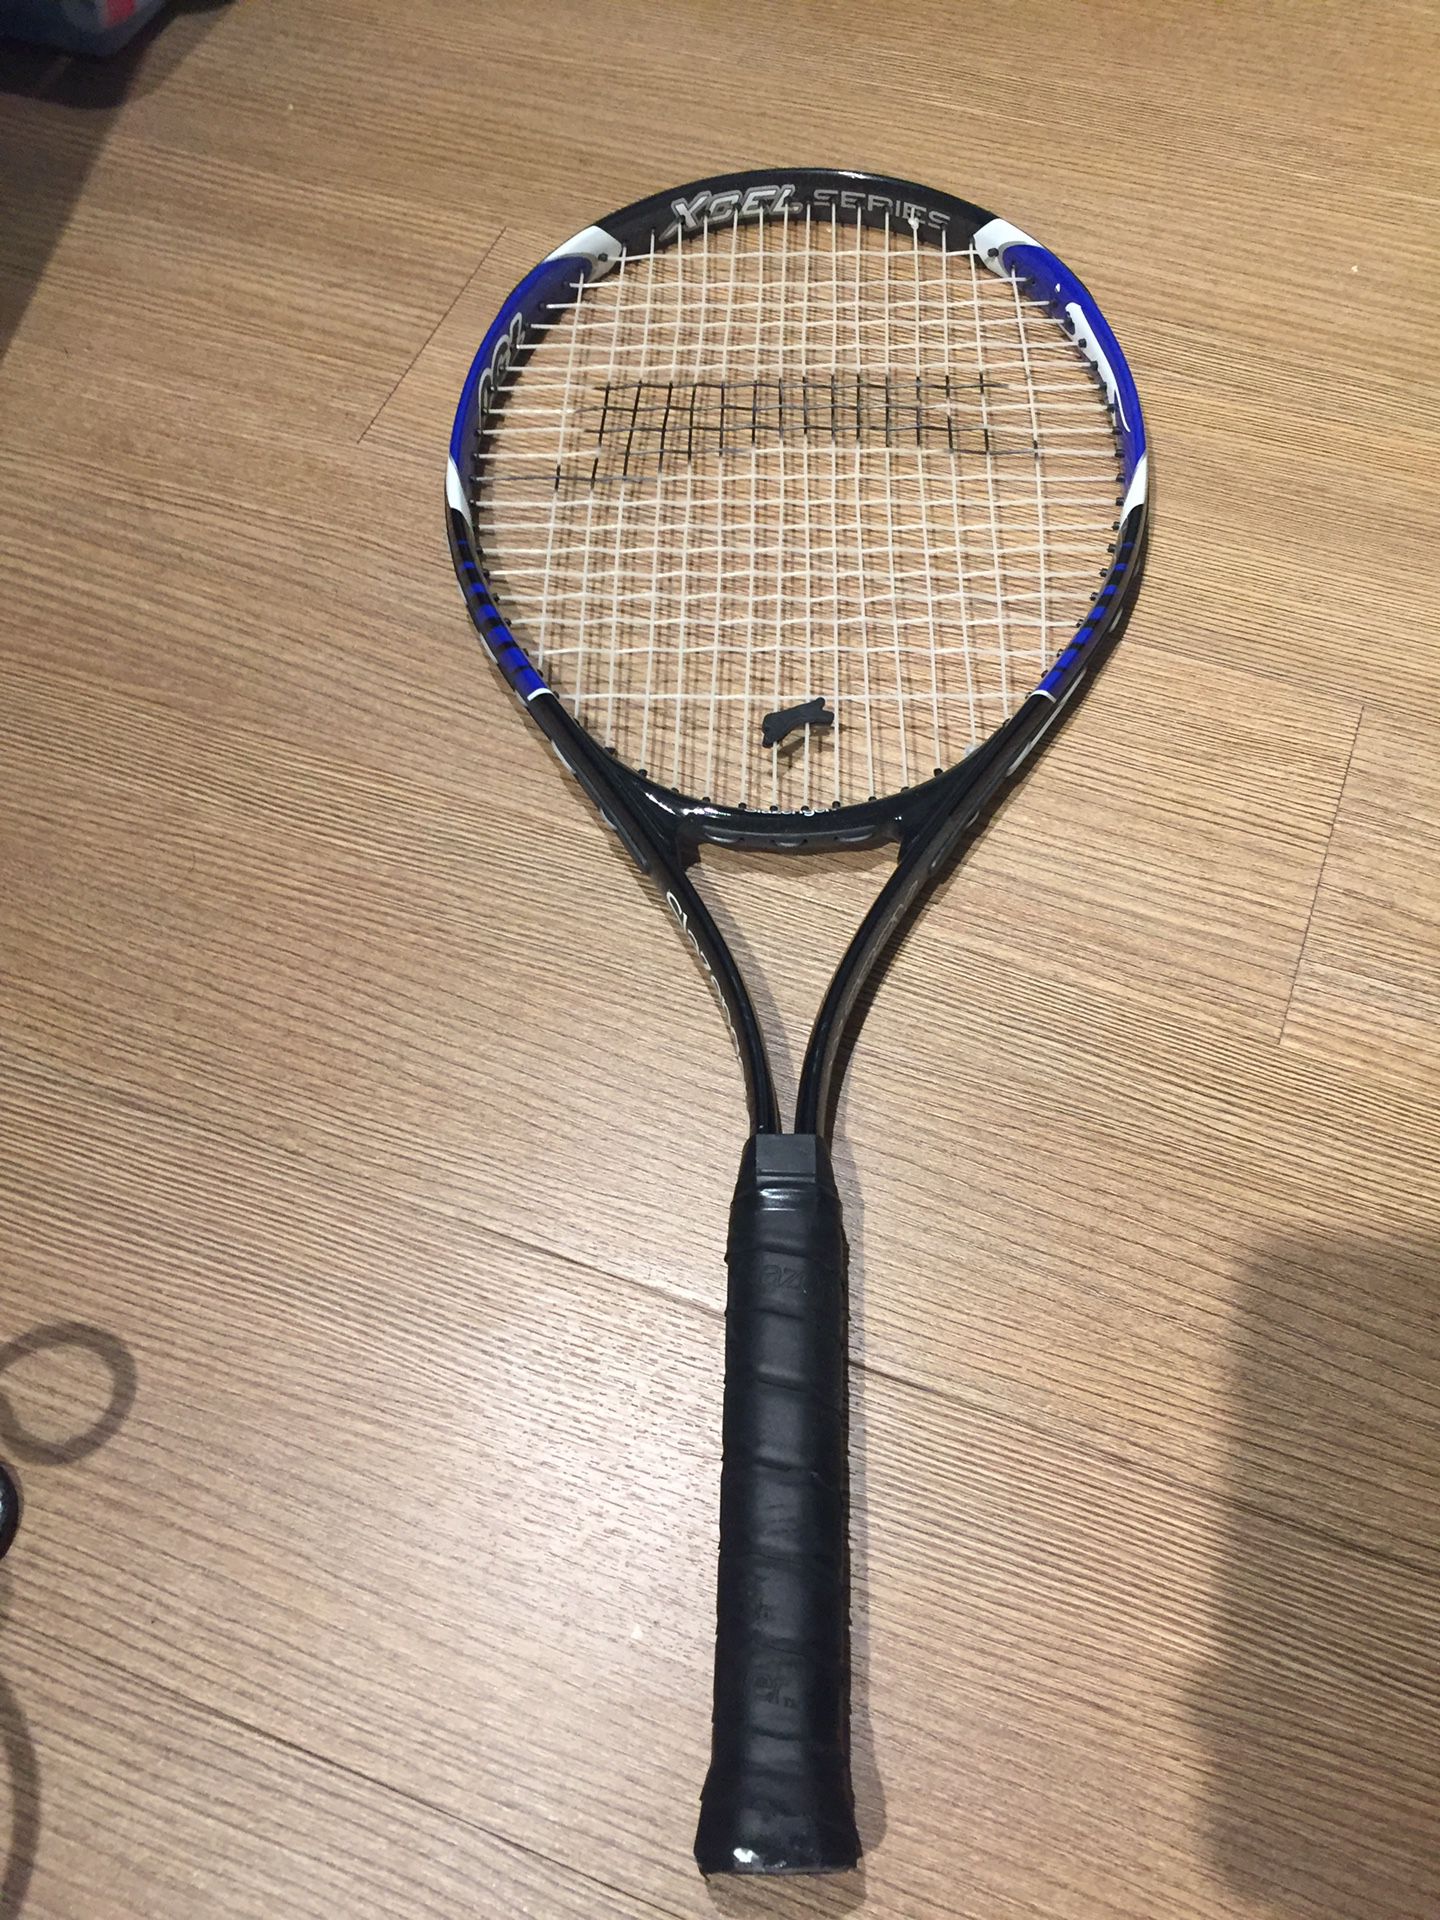 Slezinger tennis racket